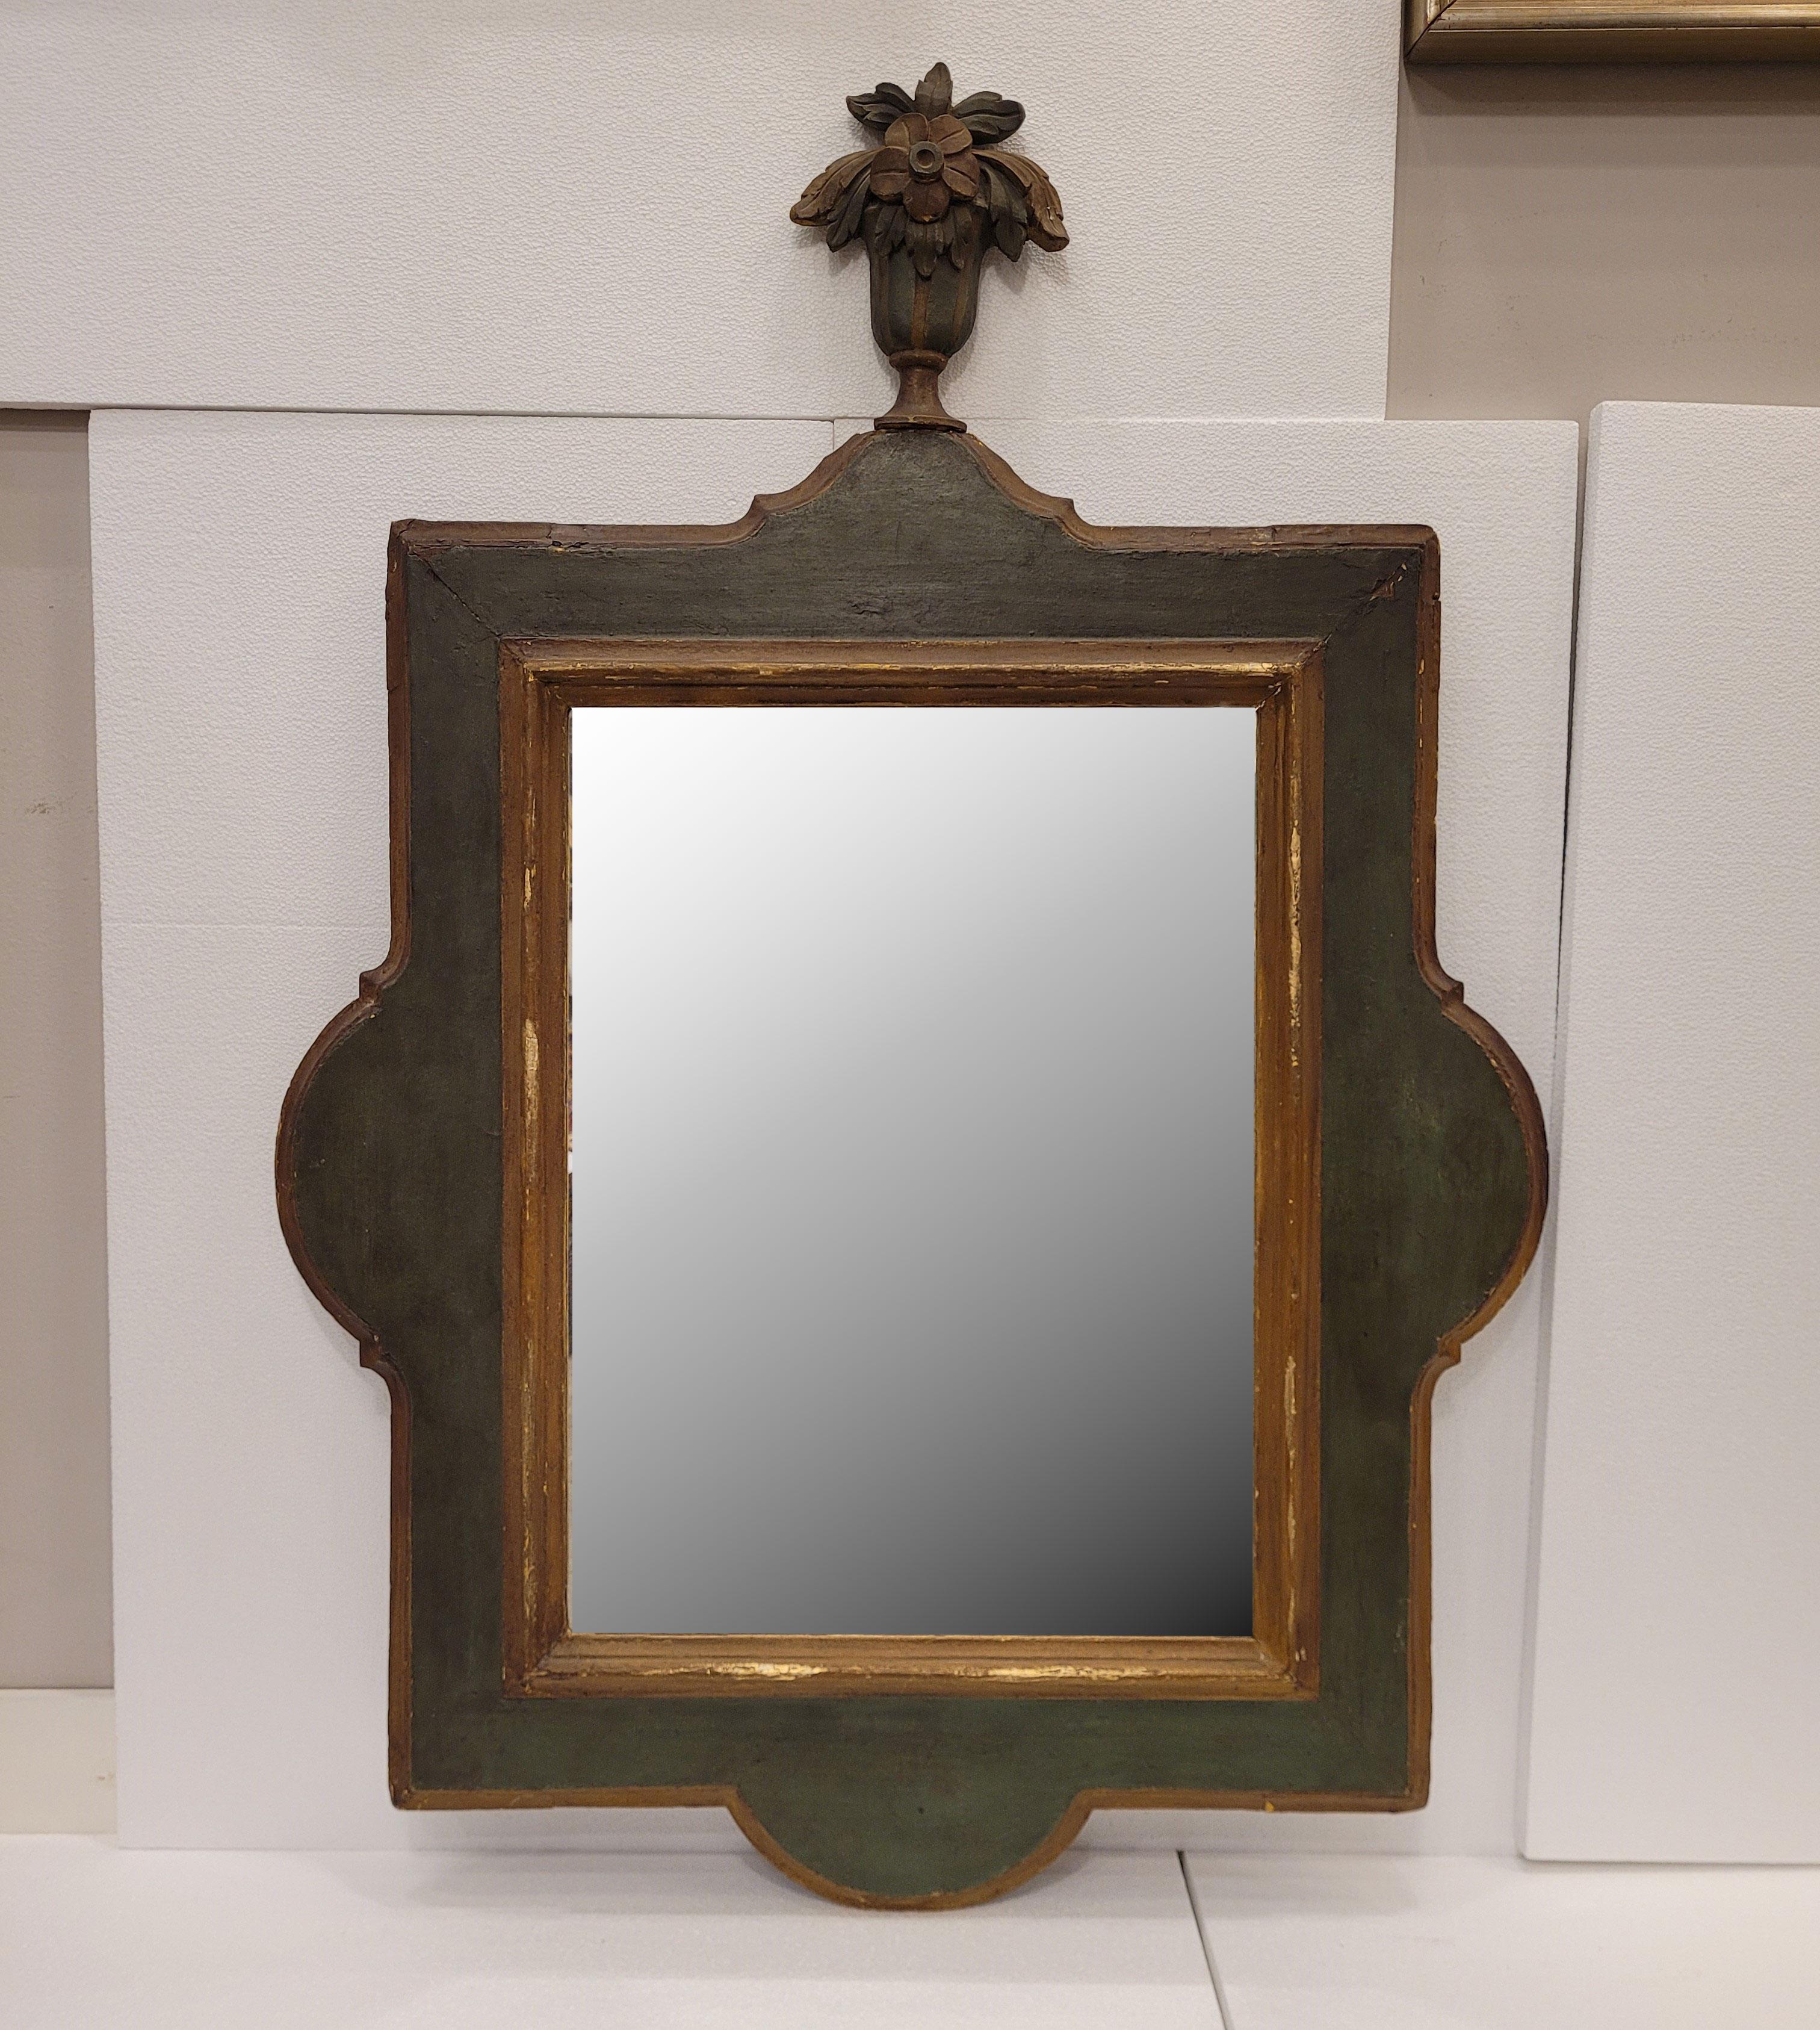 Spectaculaire miroir français de style Louis XV provençal, XVIIIe siècle.
Avec un profil mixte en bois polychrome dans un vert français doux et des profils dorés, déjà balayés par le temps.
Avec une corne d'abondance en bois sculpté et polychrome